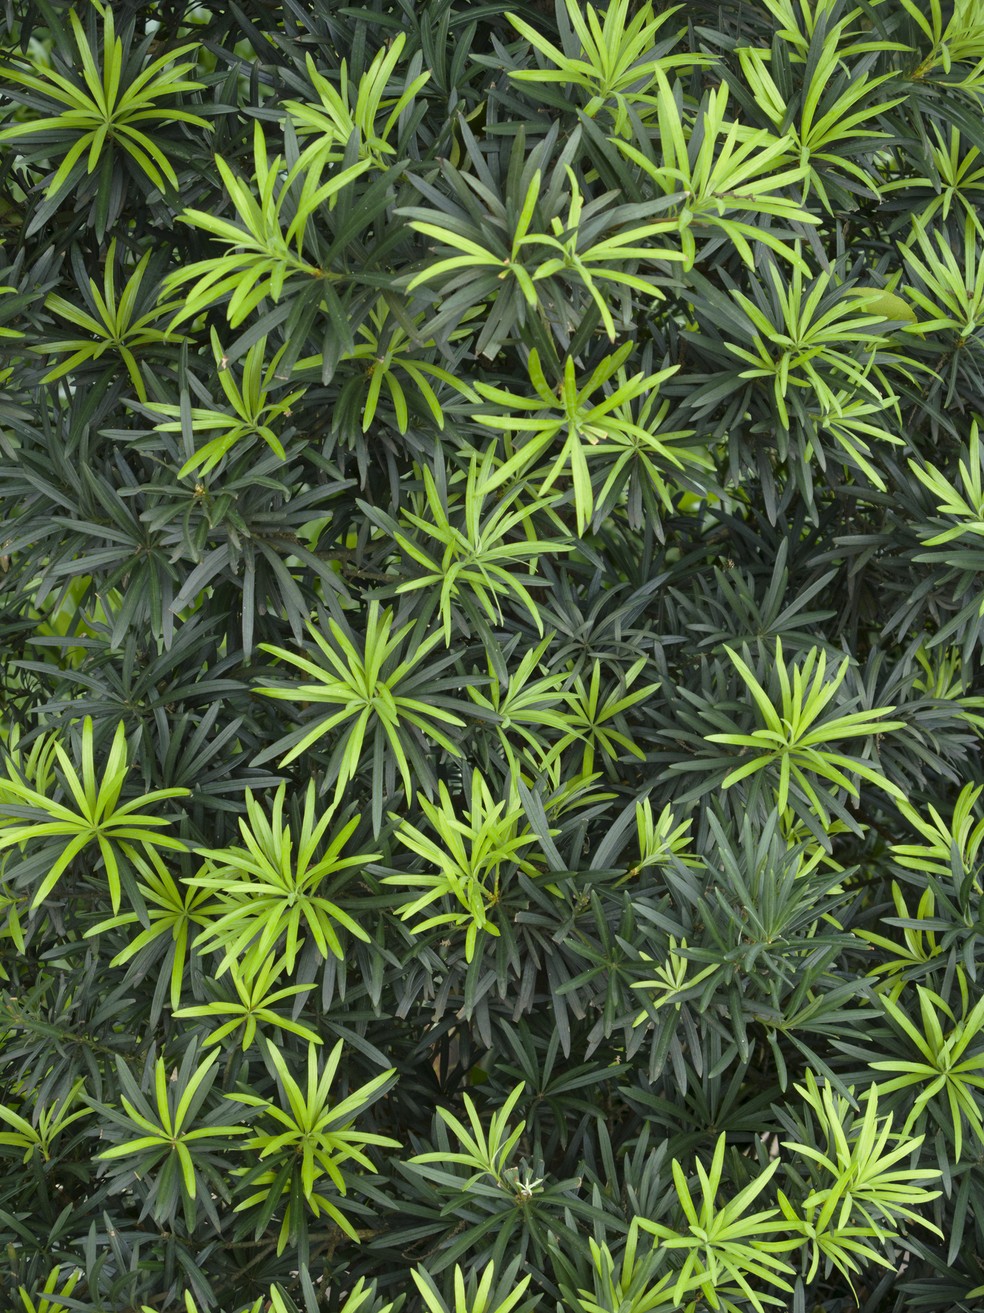 O podocarpo produz folhas de tom verde-escuro e brilhantes — Foto: Getty Images